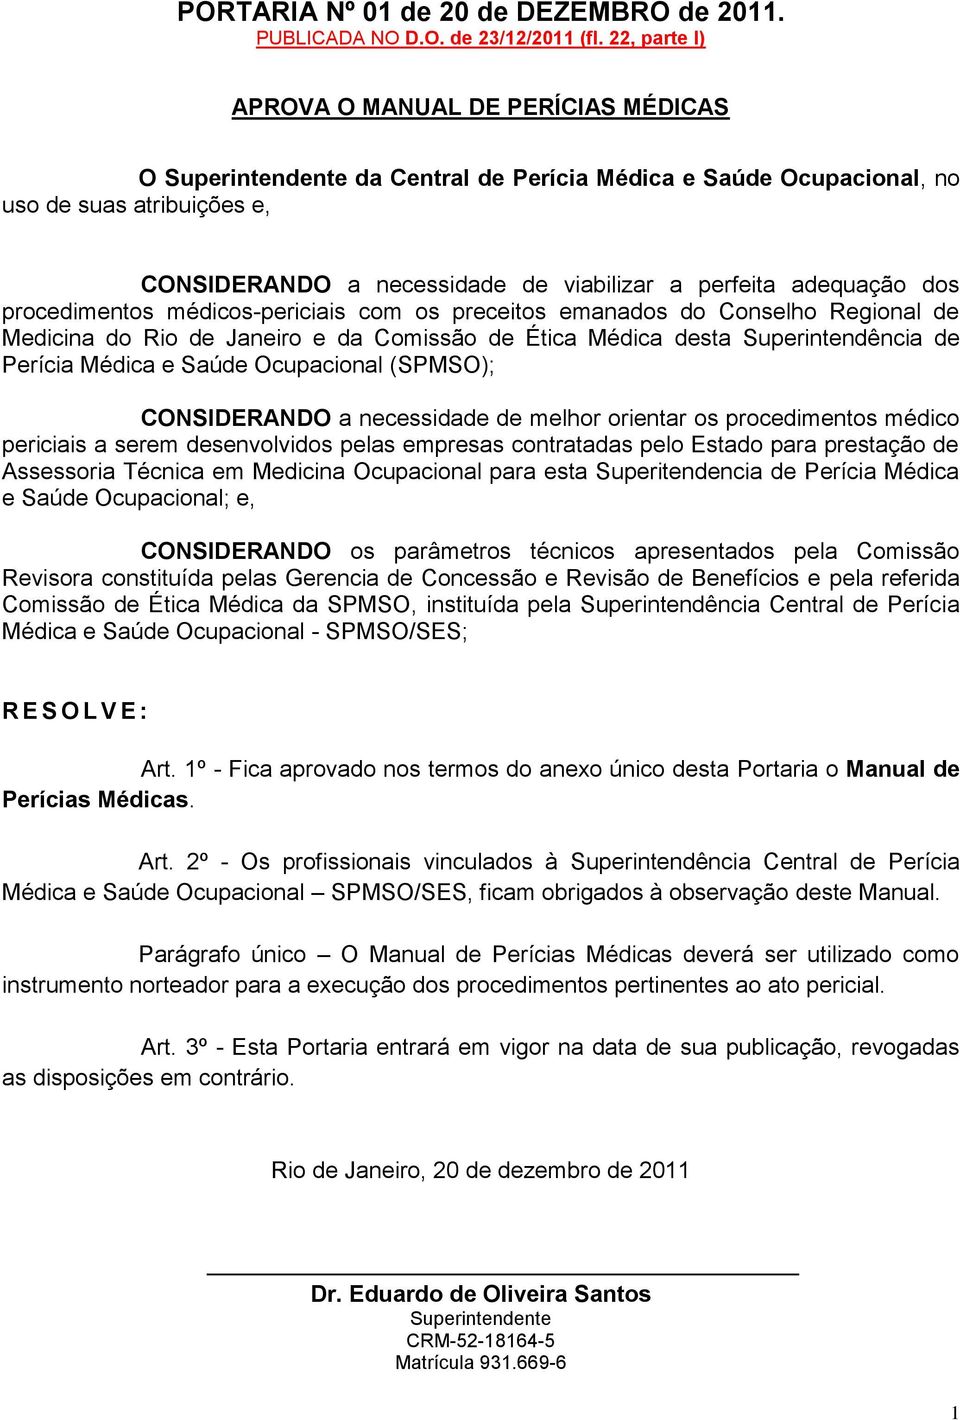 adequação dos procedimentos médicos-periciais com os preceitos emanados do Conselho Regional de Medicina do Rio de Janeiro e da Comissão de Ética Médica desta Superintendência de Perícia Médica e